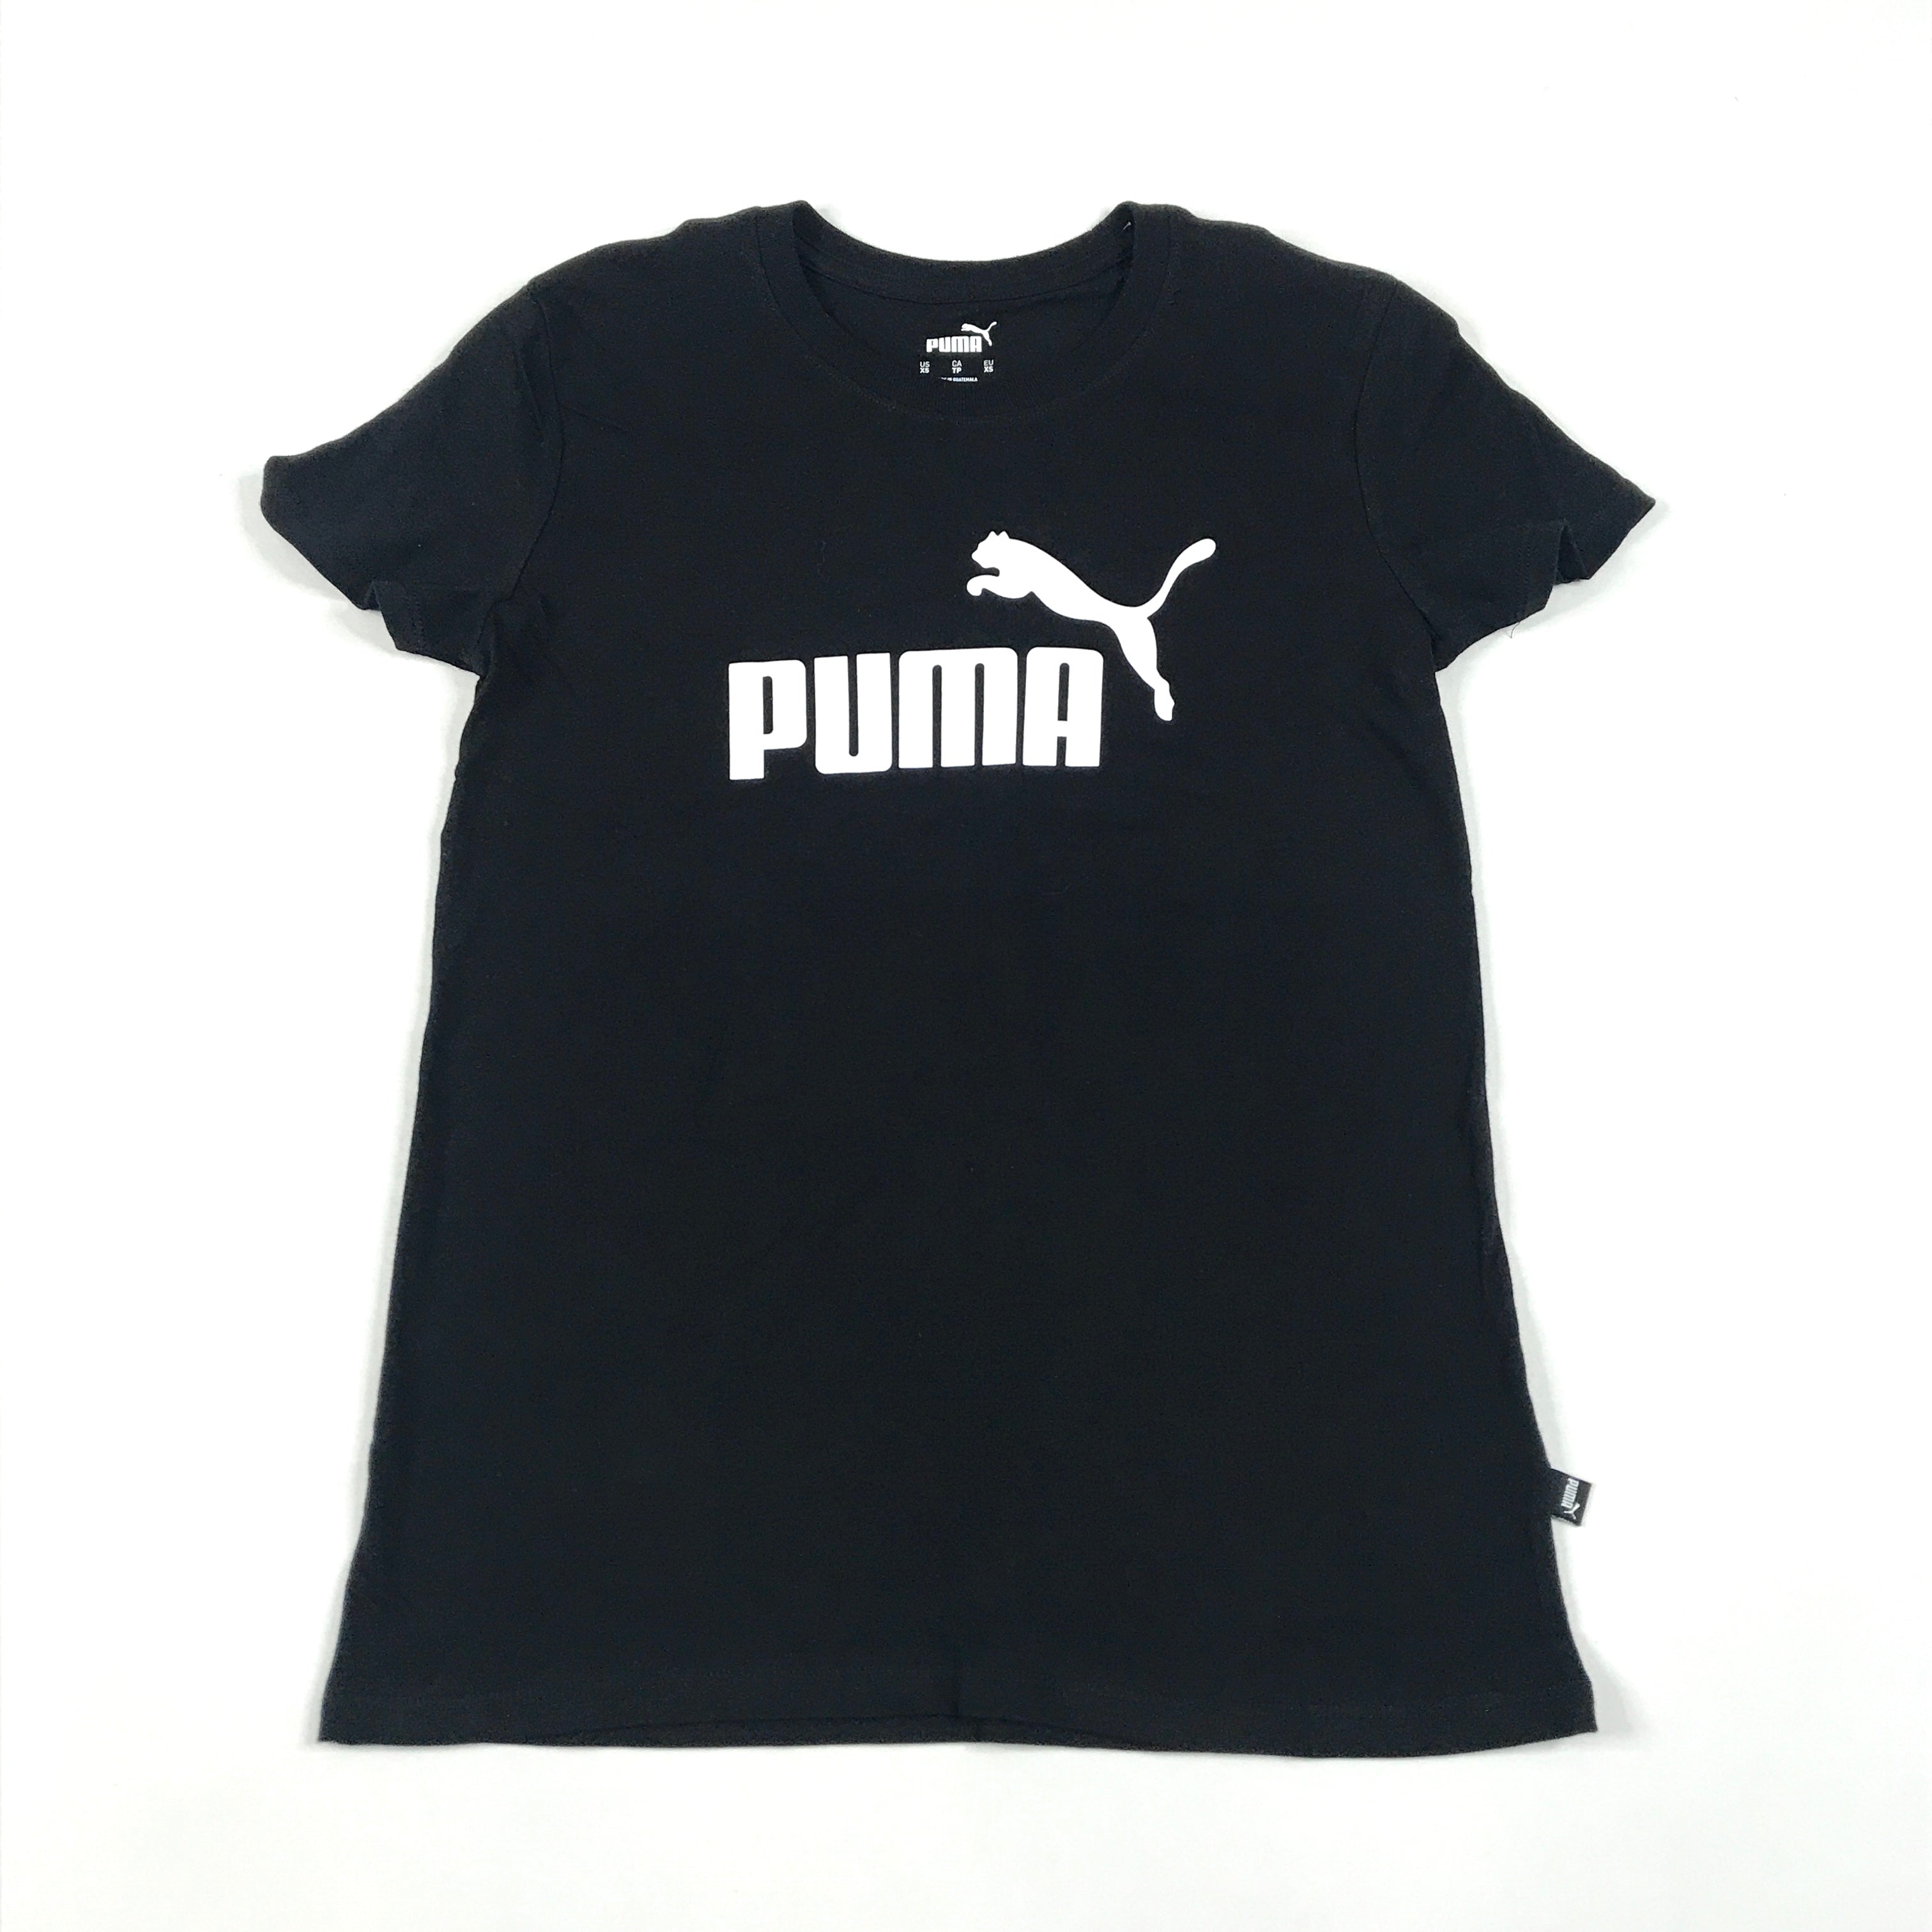 Puma Iconic T7 leggings in black